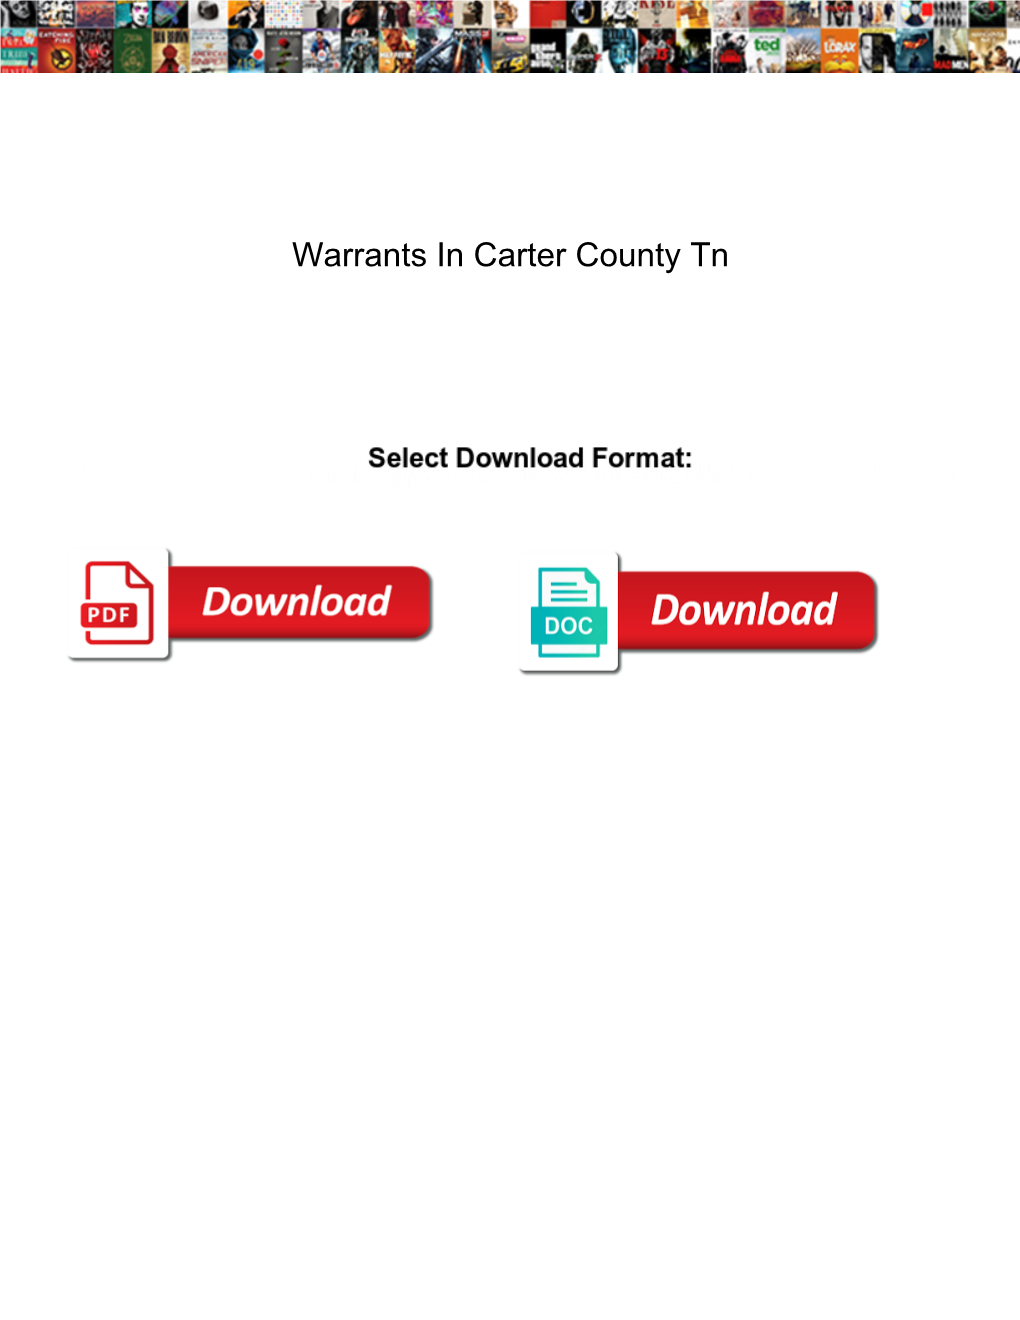 Warrants in Carter County Tn